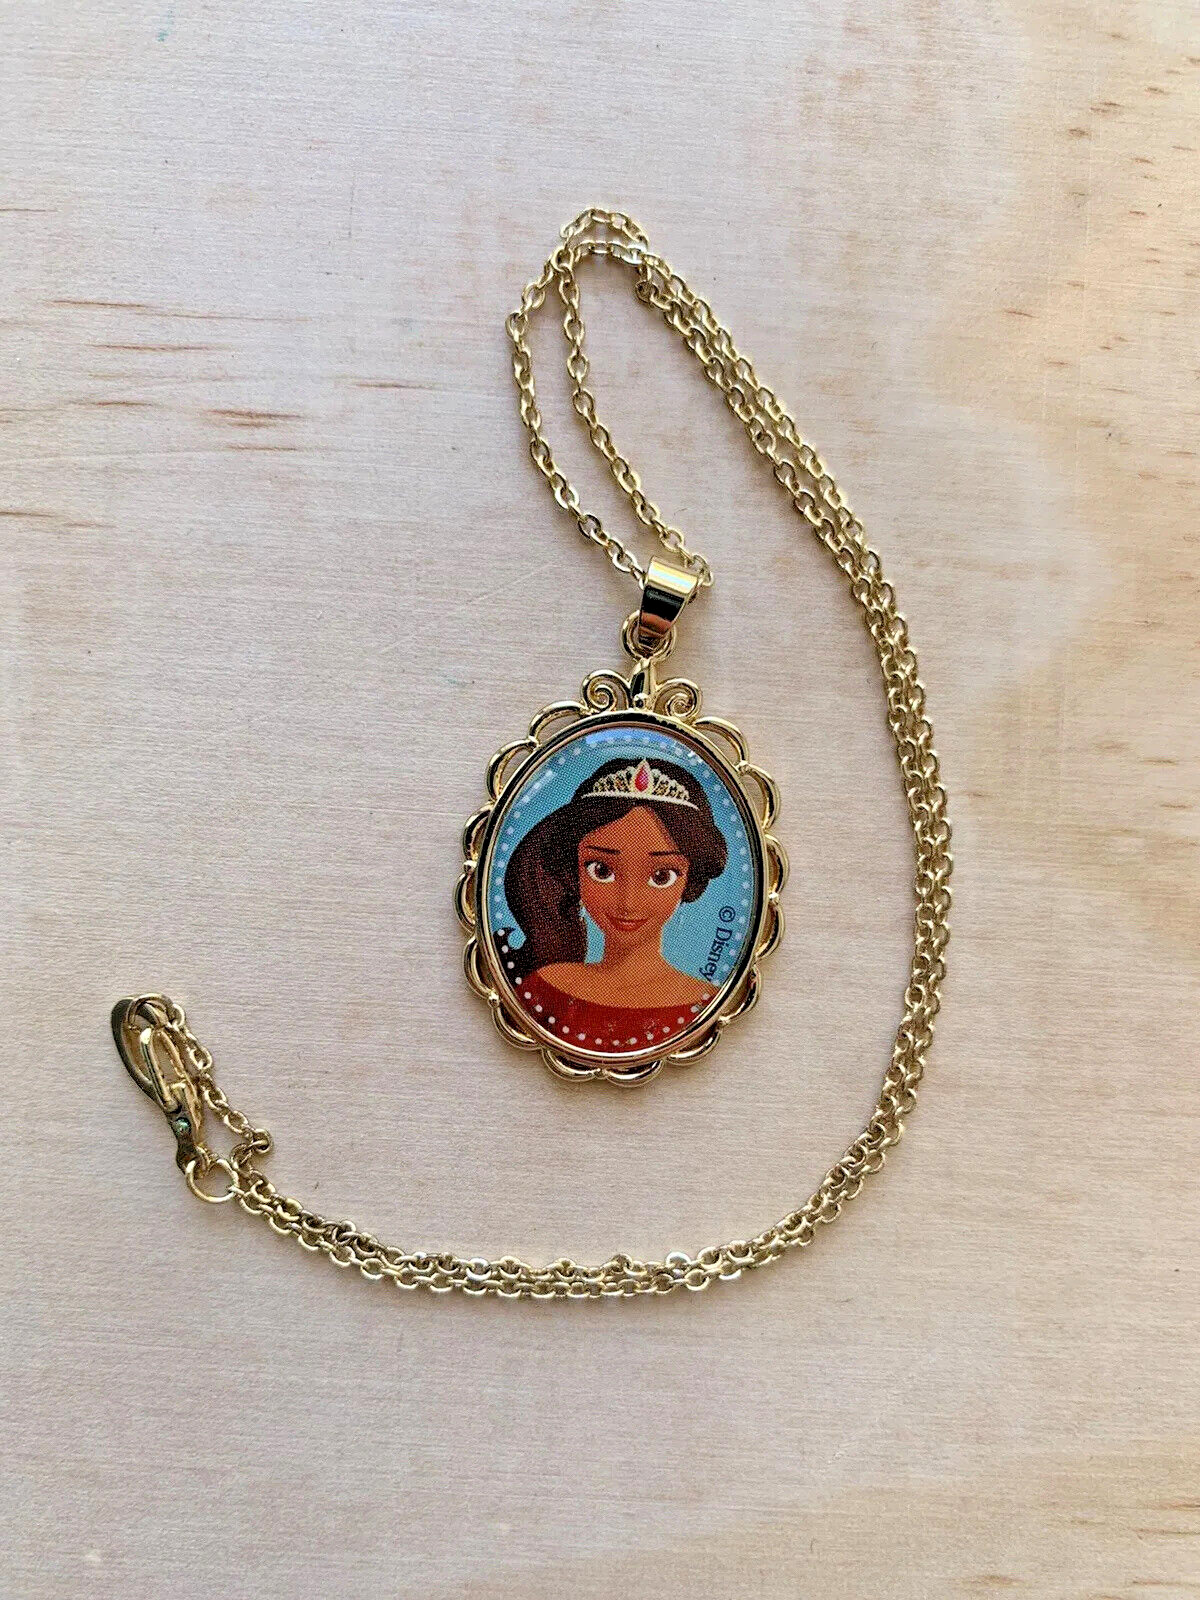 Elena Of Avalor Pendant Necklace Disney Gold Tone Disney Youth Size